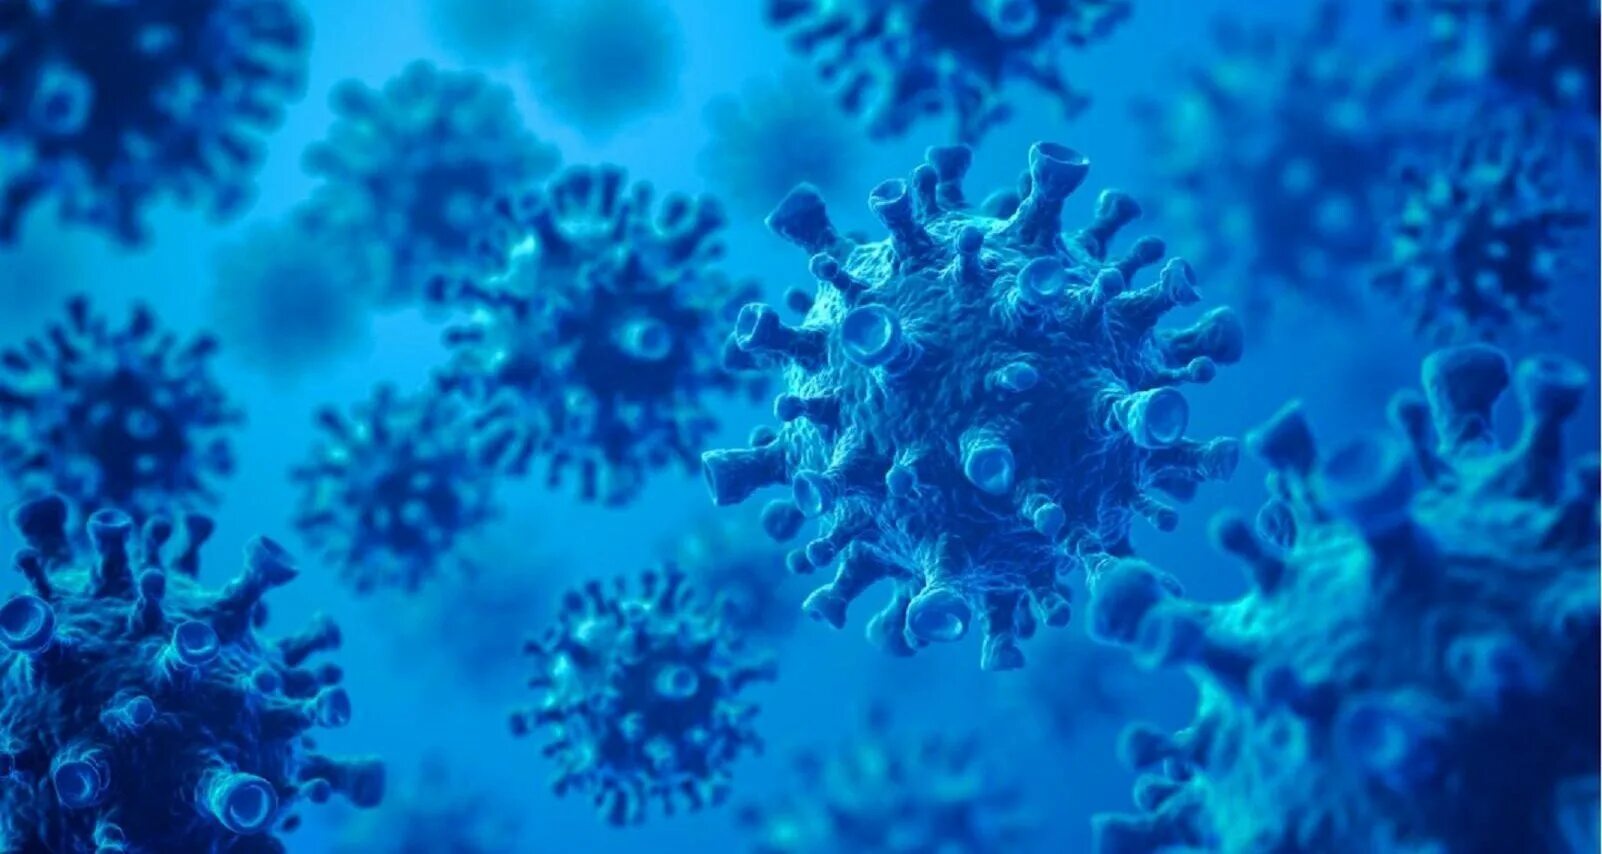 Картинки про вируса. Вирус. Голубой вирус. Синие бактерии. Вирусы фон.